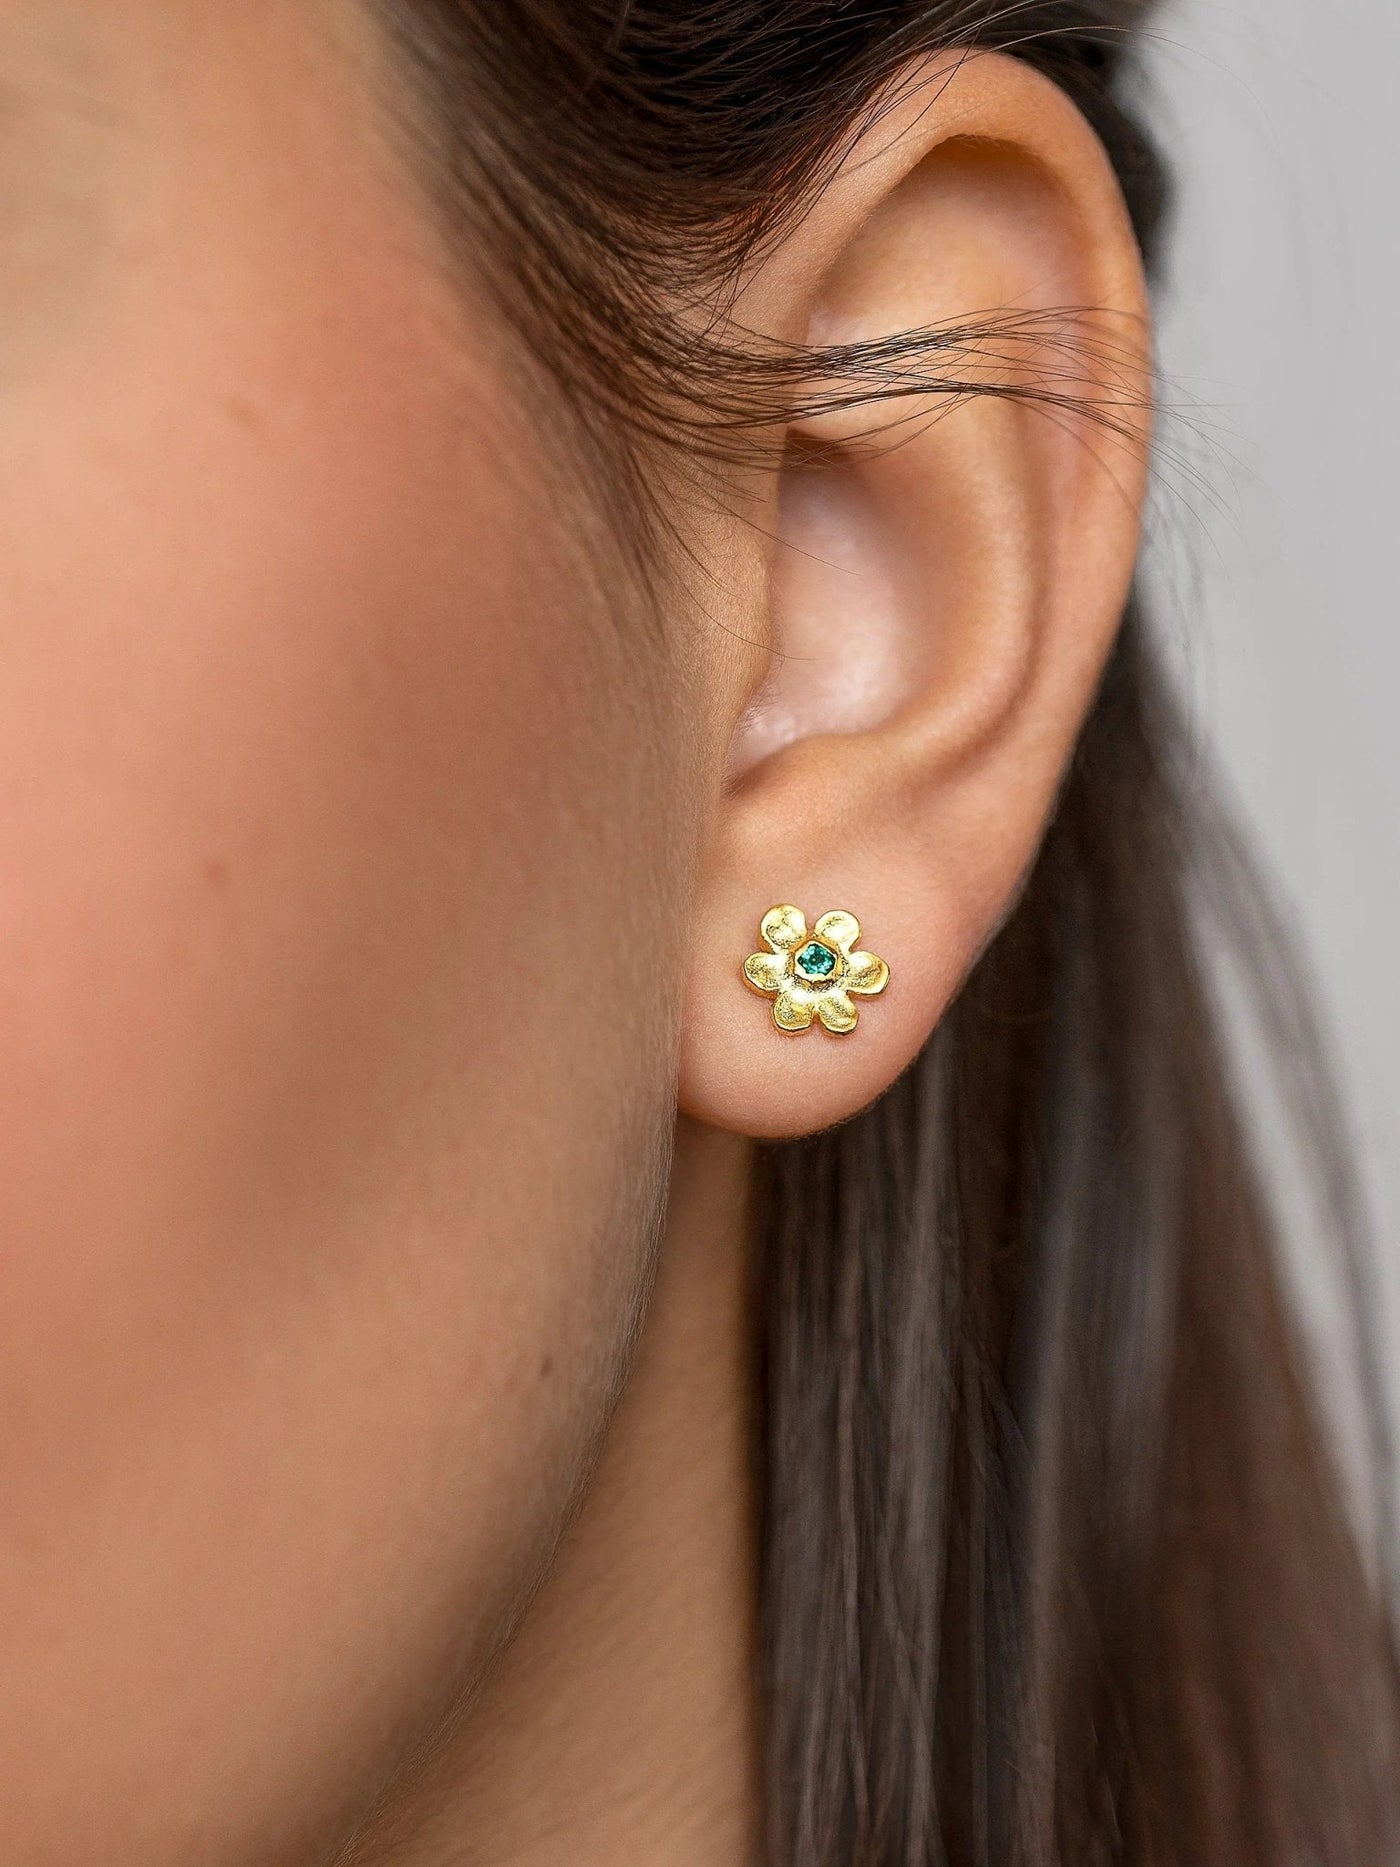 Iva Daisy Stud Earrings - 24k Gold Matteartisan earringscool earringsLunai Jewelry